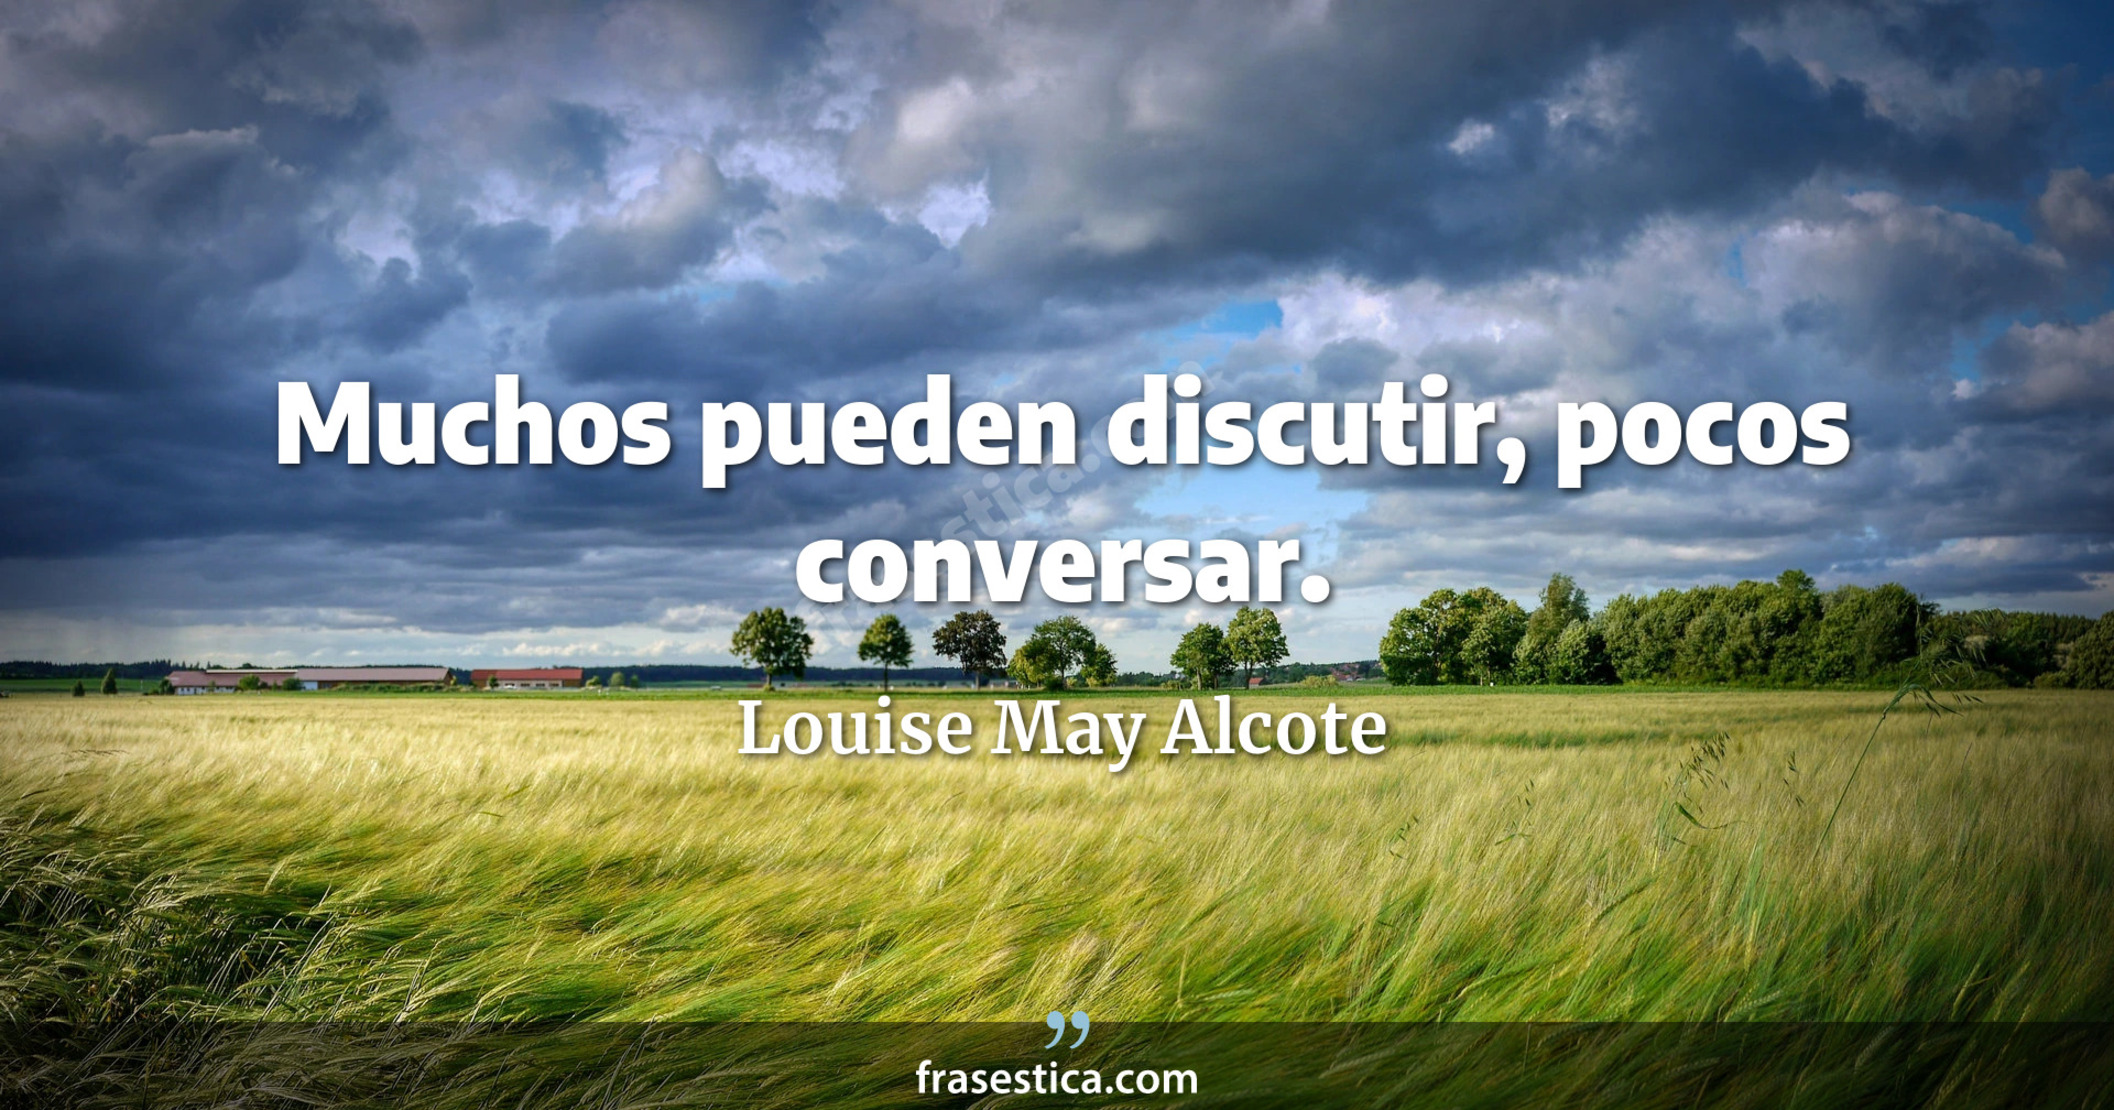 Muchos pueden discutir, pocos conversar. - Louise May Alcote